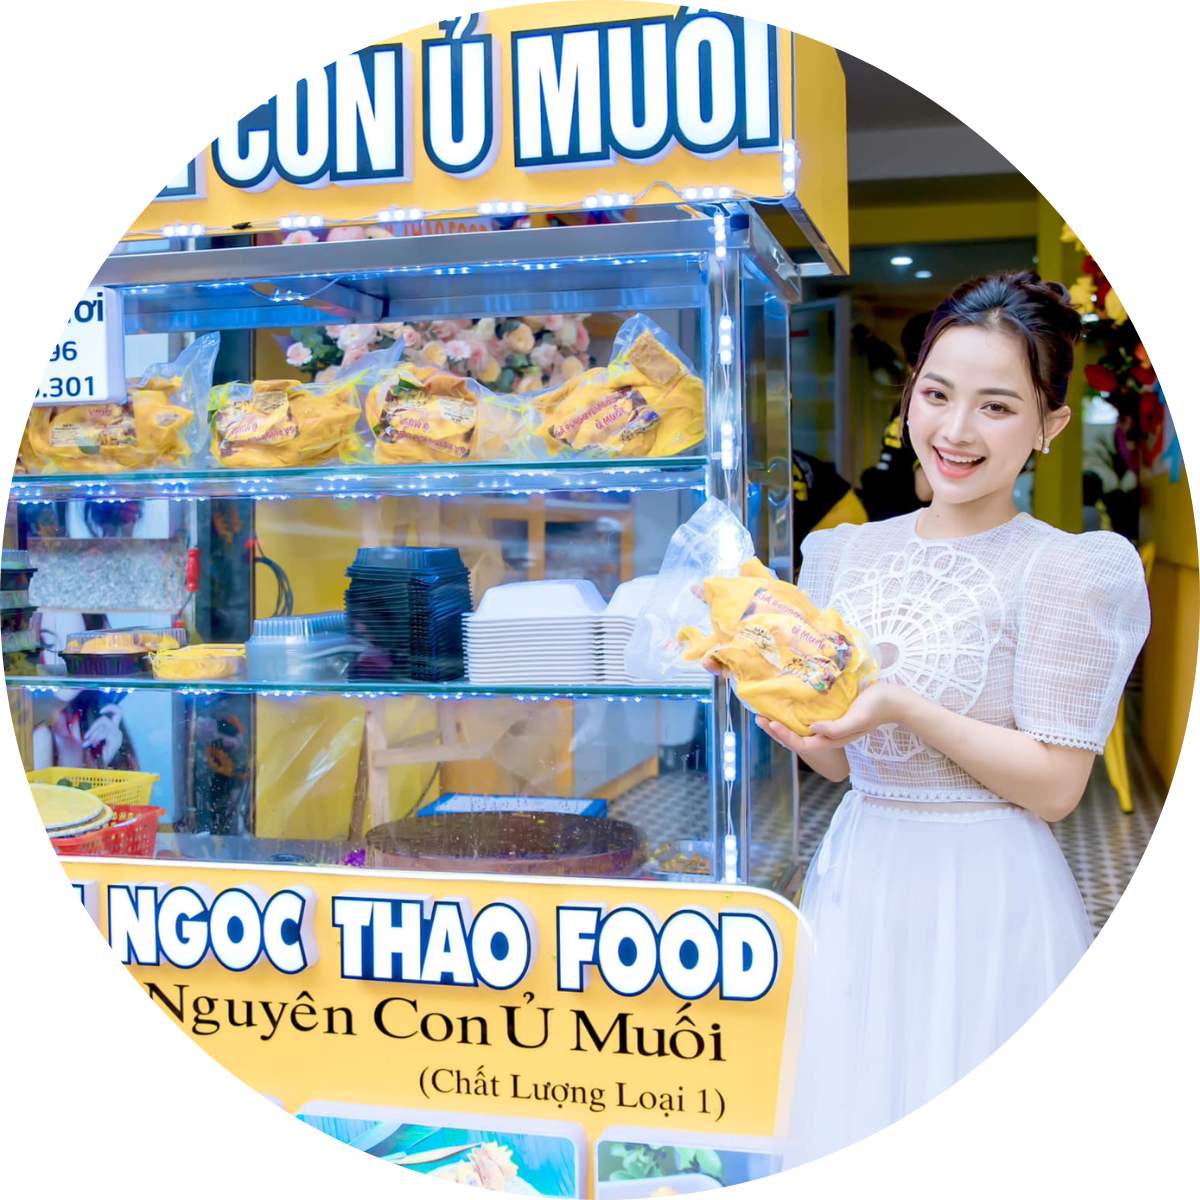 Gà ủ muối - Châu Ngọc Thảo Food